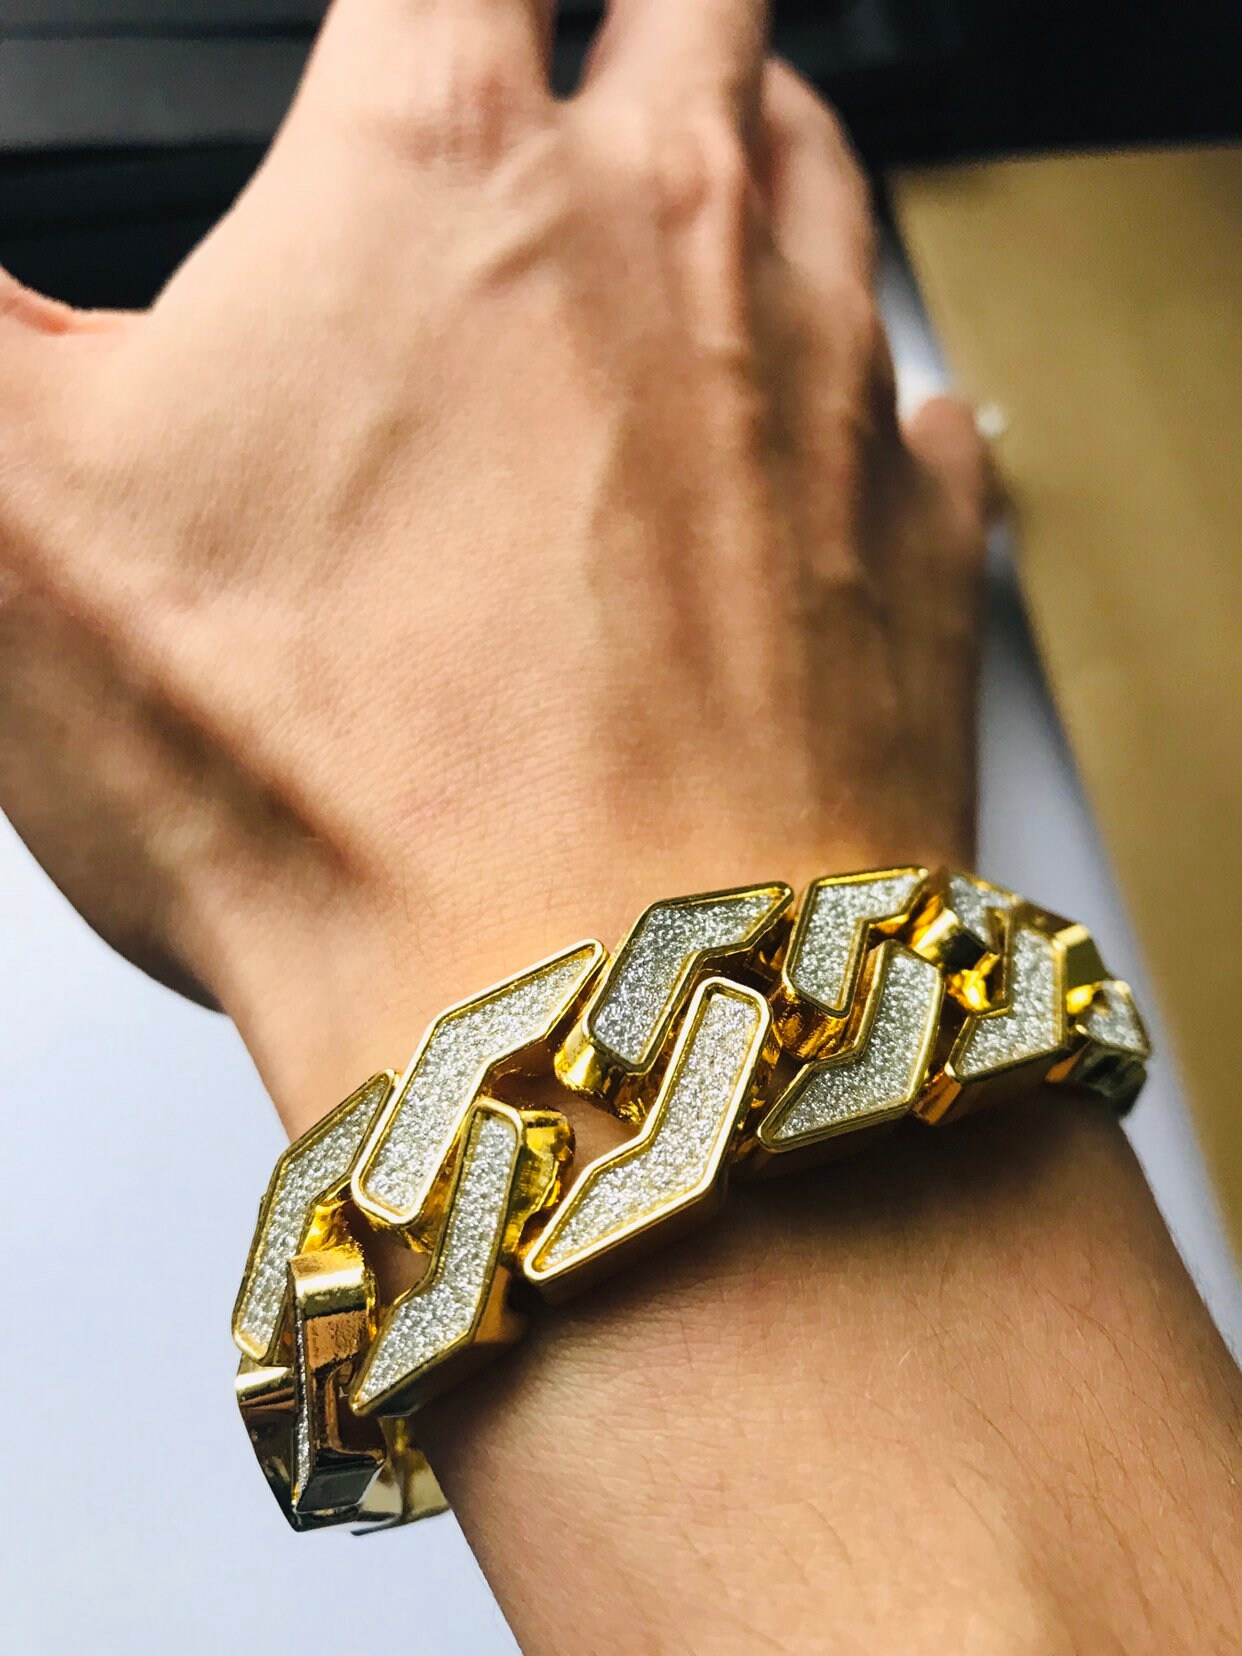 Buy KRYSTALZ Iced Out Cuban Bracelet Bling Zirconia Cuban Miami Link  Jewelry for Men Women Hip Hop Bracelets Jewelry (Gold) at Amazon.in